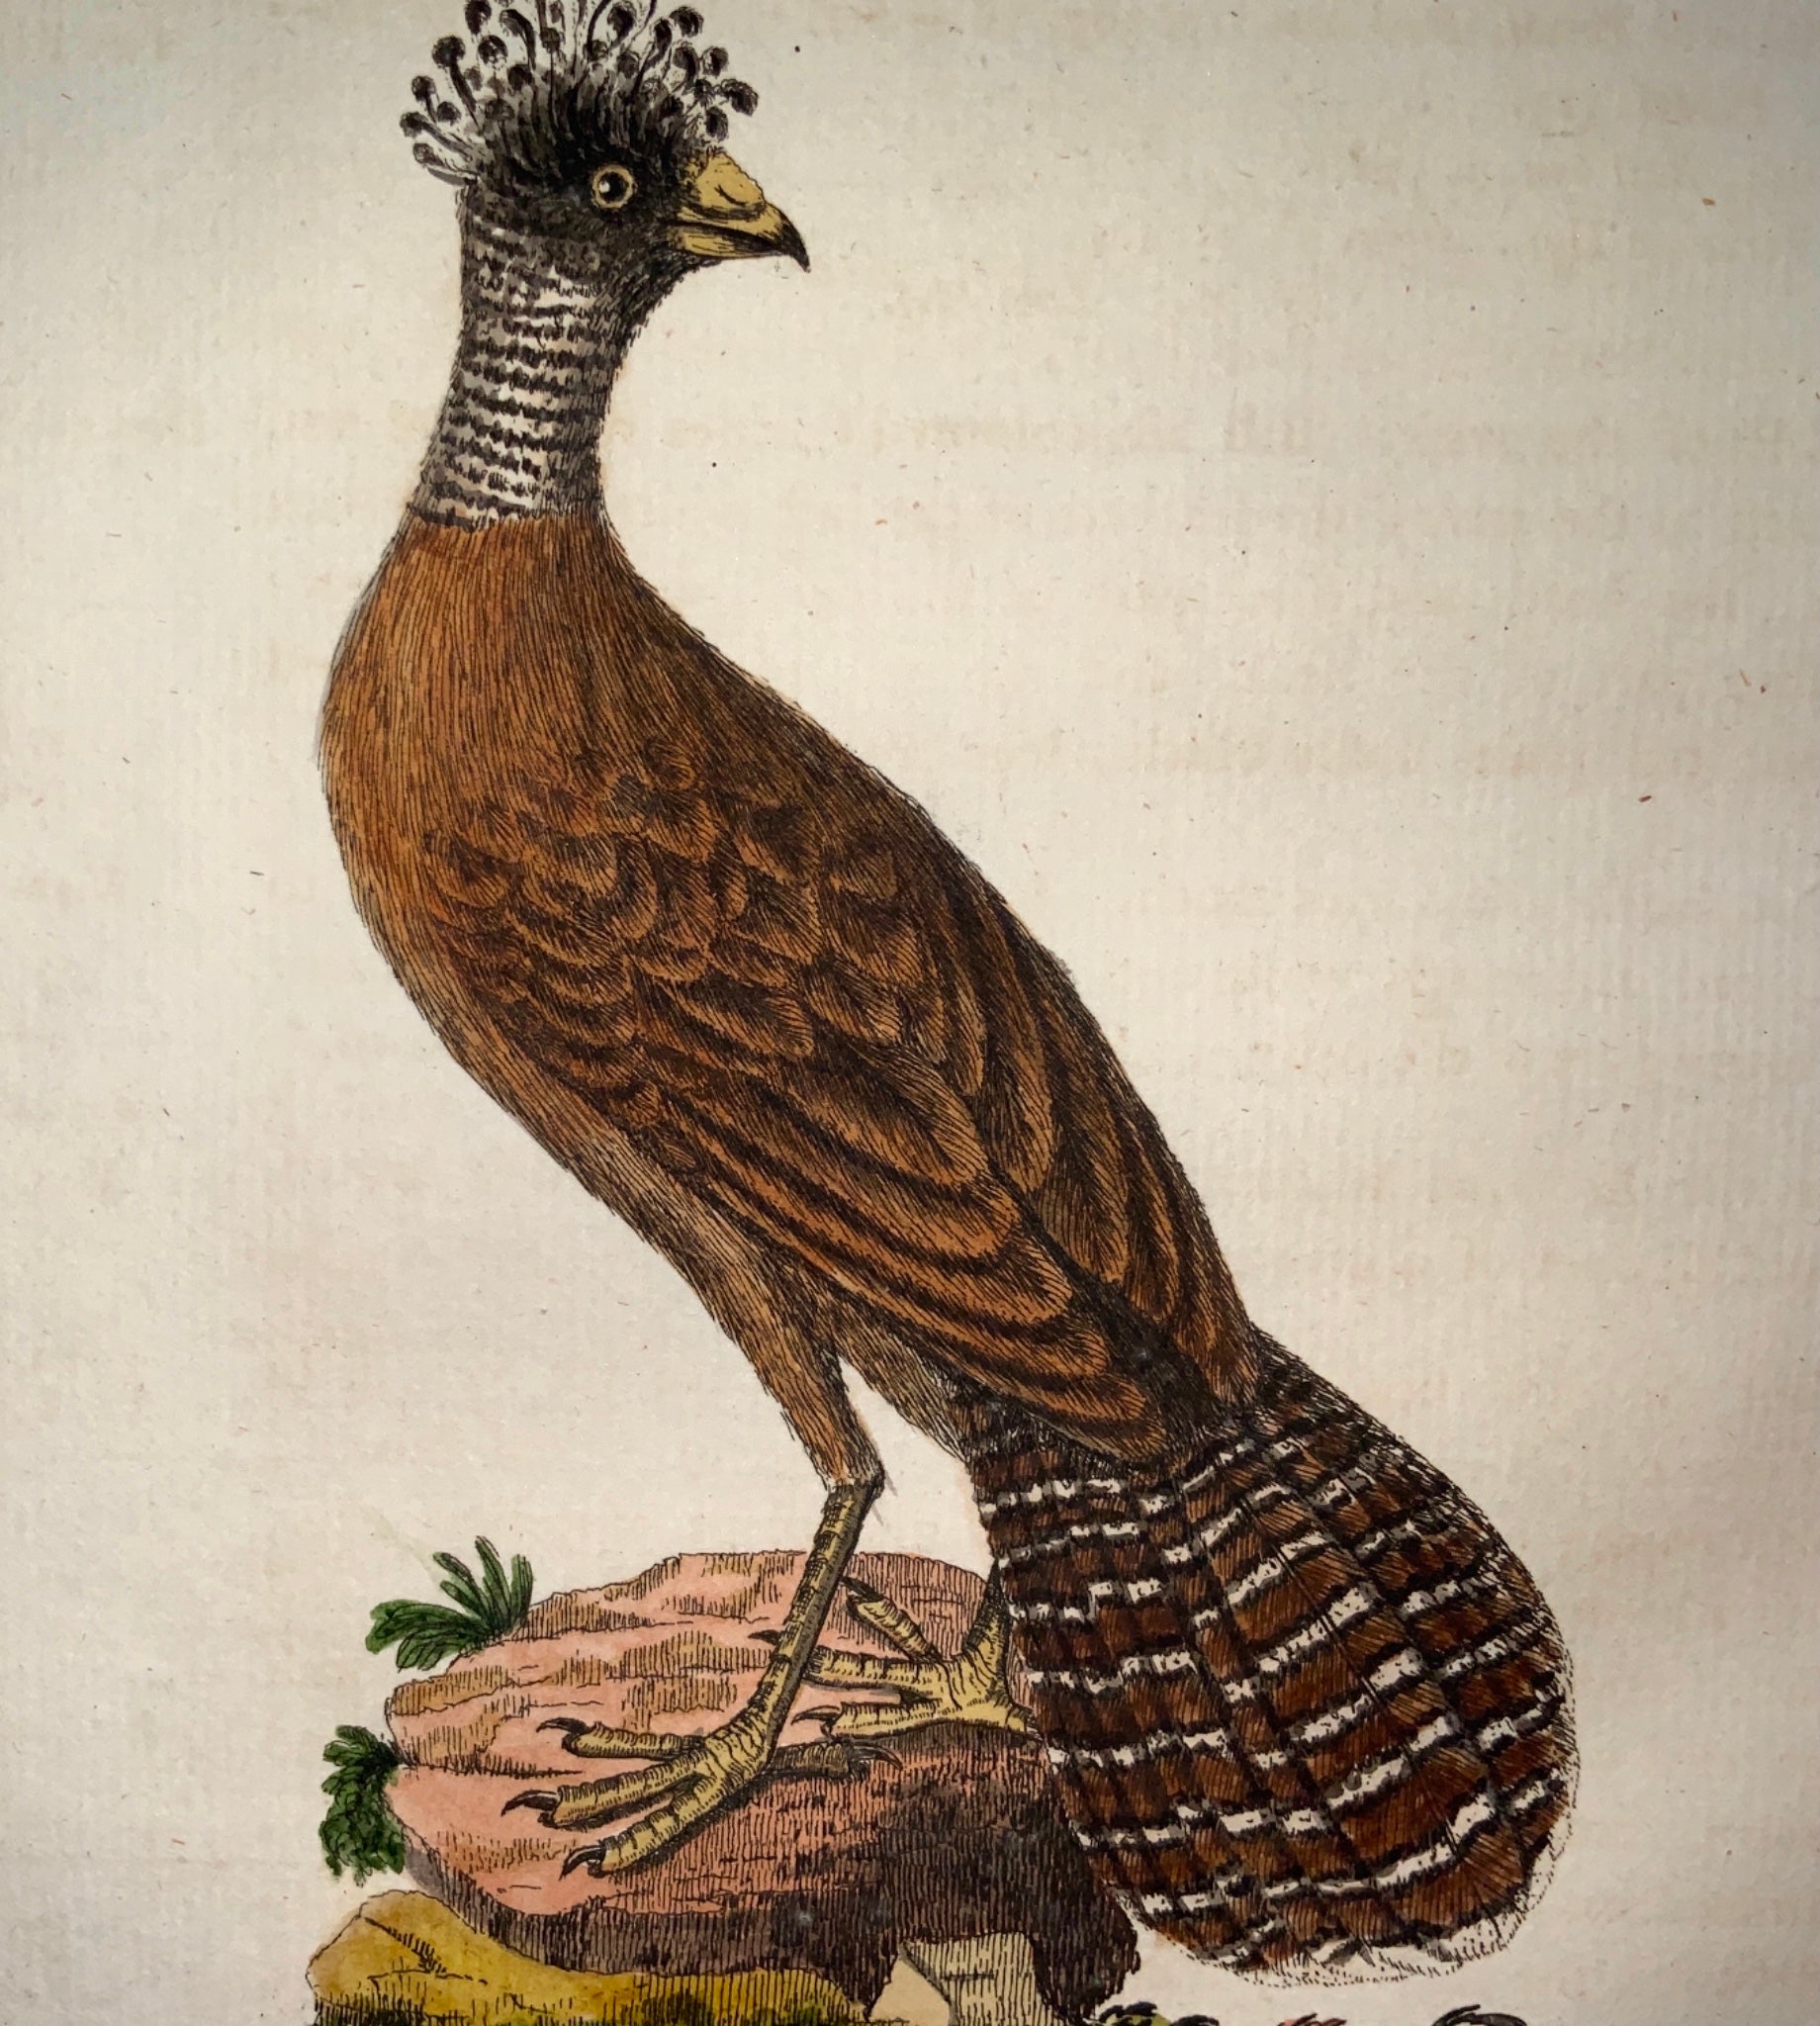 1785 John Latham - Synopsis - CRESTED CURRASOW - hand coloured engraving - Ornithology